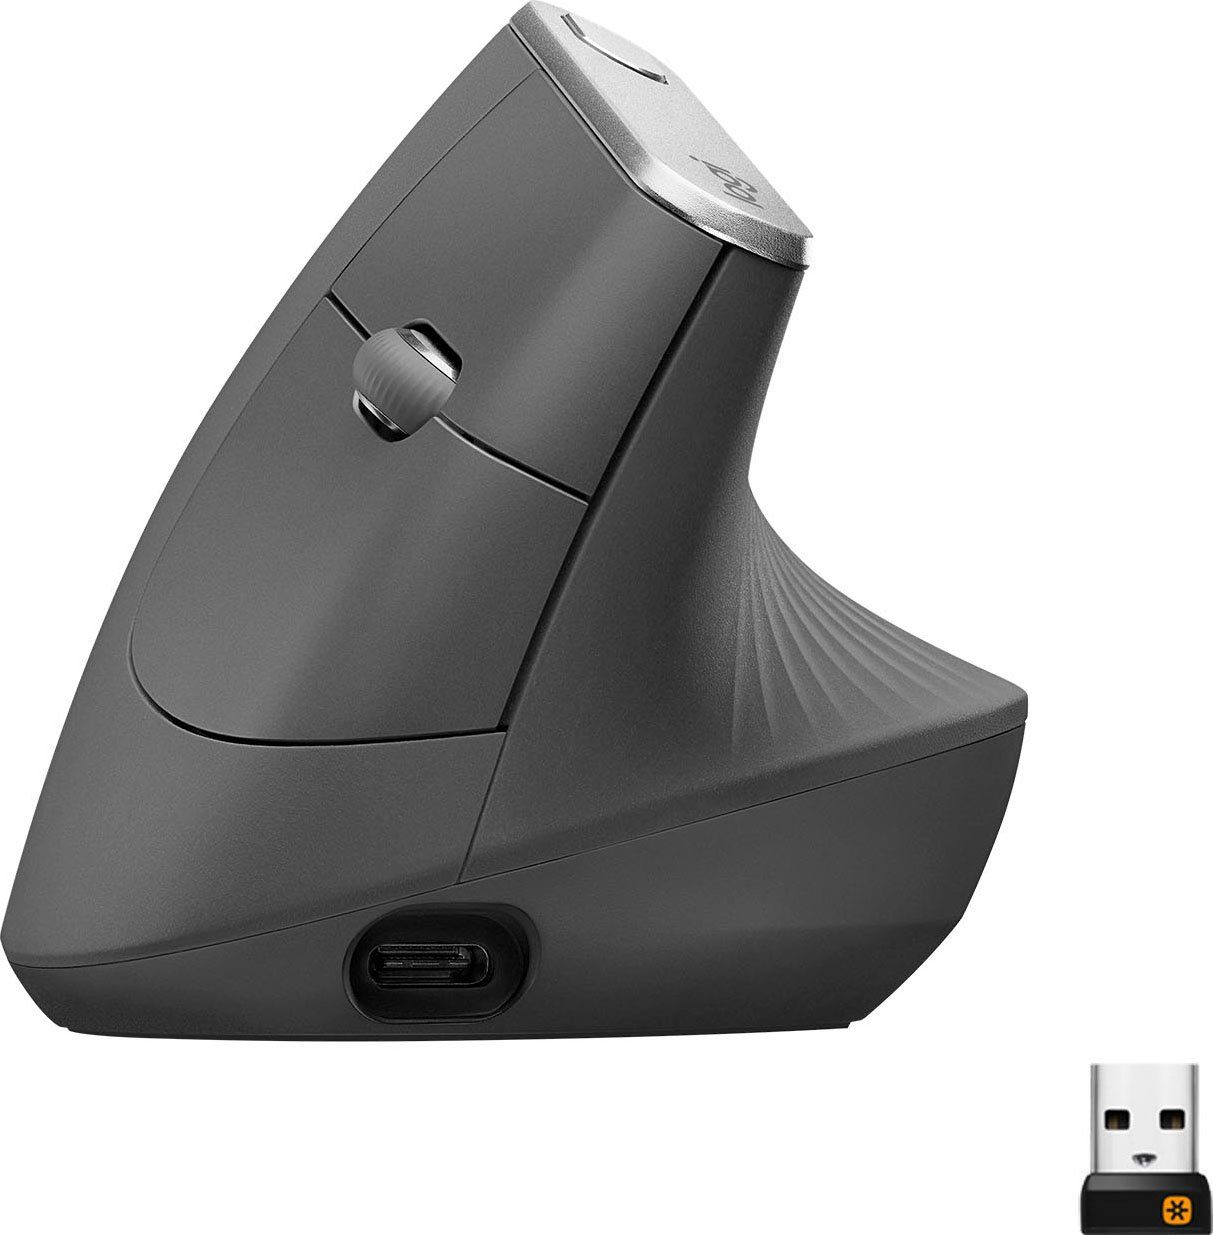 Logitech »MX Vertical« ergonomische Maus (Bluetooth) online kaufen | OTTO